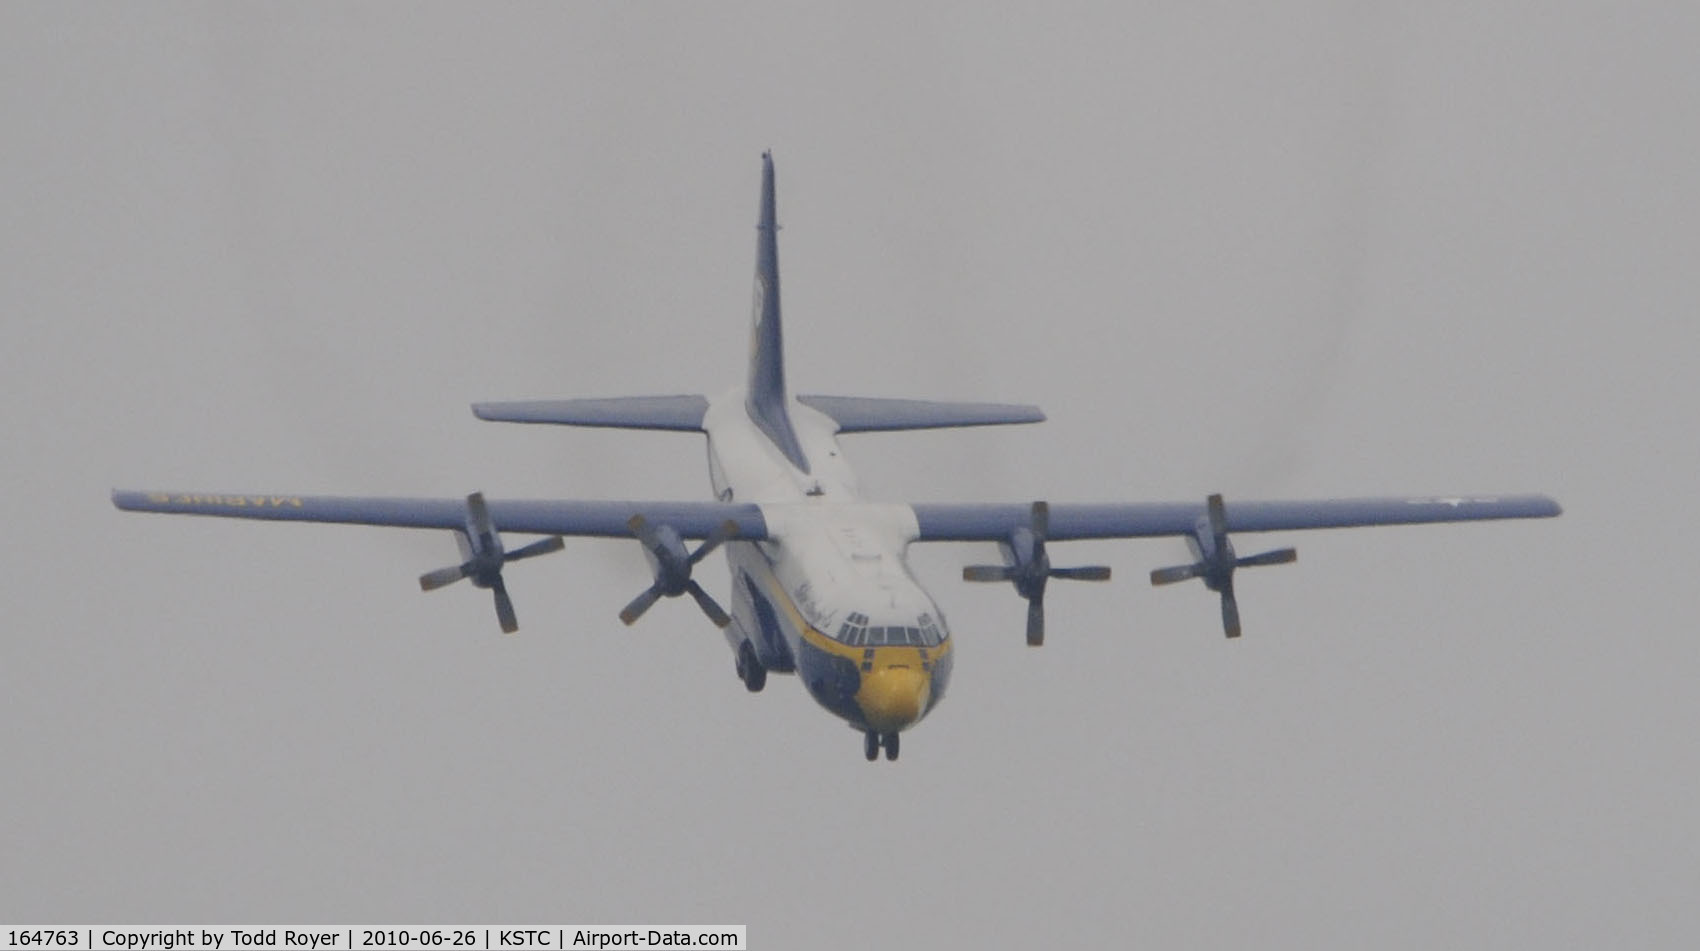 164763, 1992 Lockheed C-130T Hercules C/N 382-5258, Fat Albert at the Great Minnesota Air show